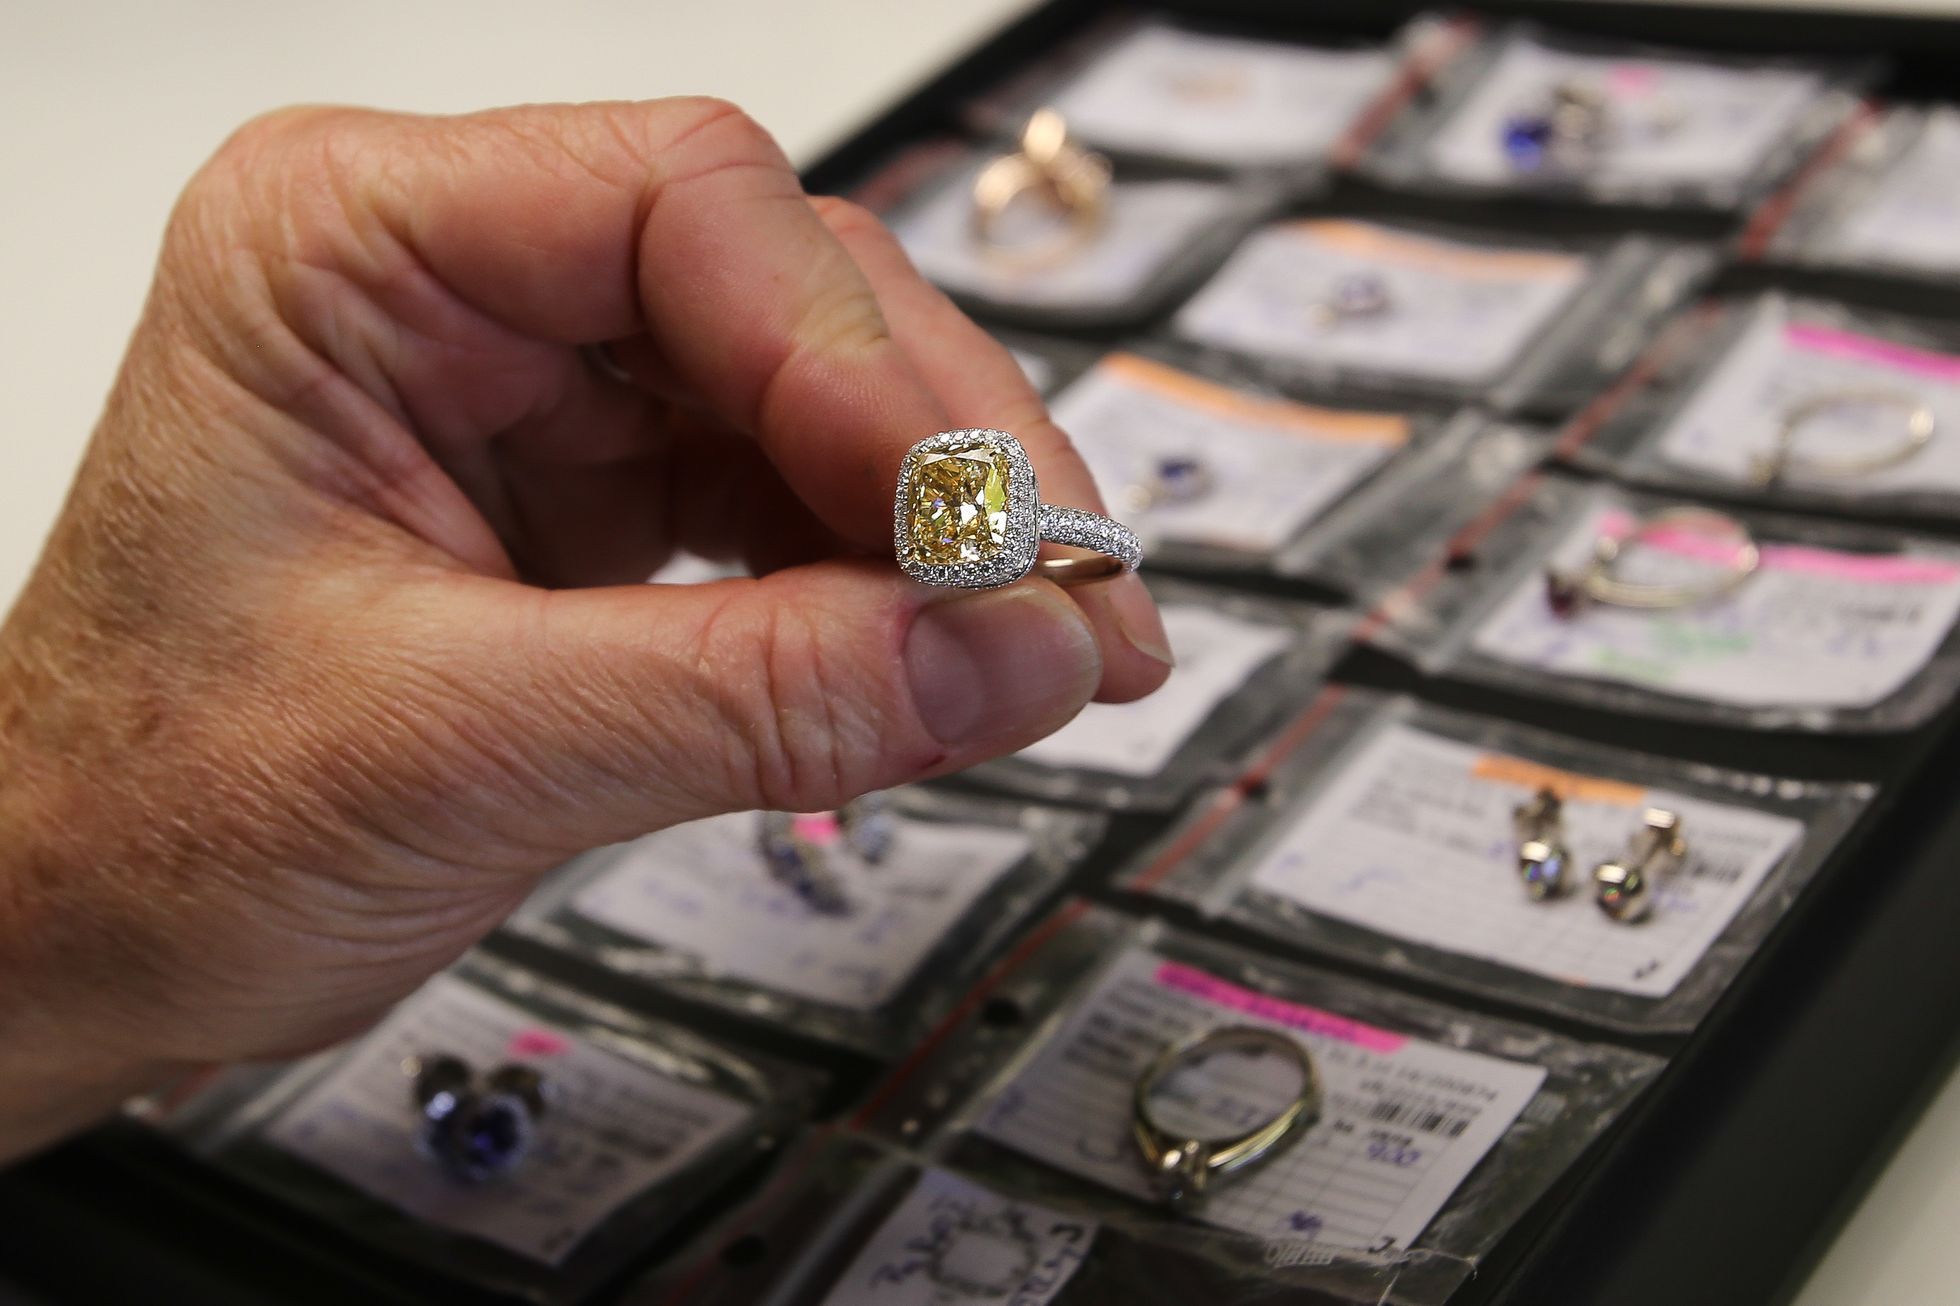 Prohlídka výroby šperků v ALO diamonds